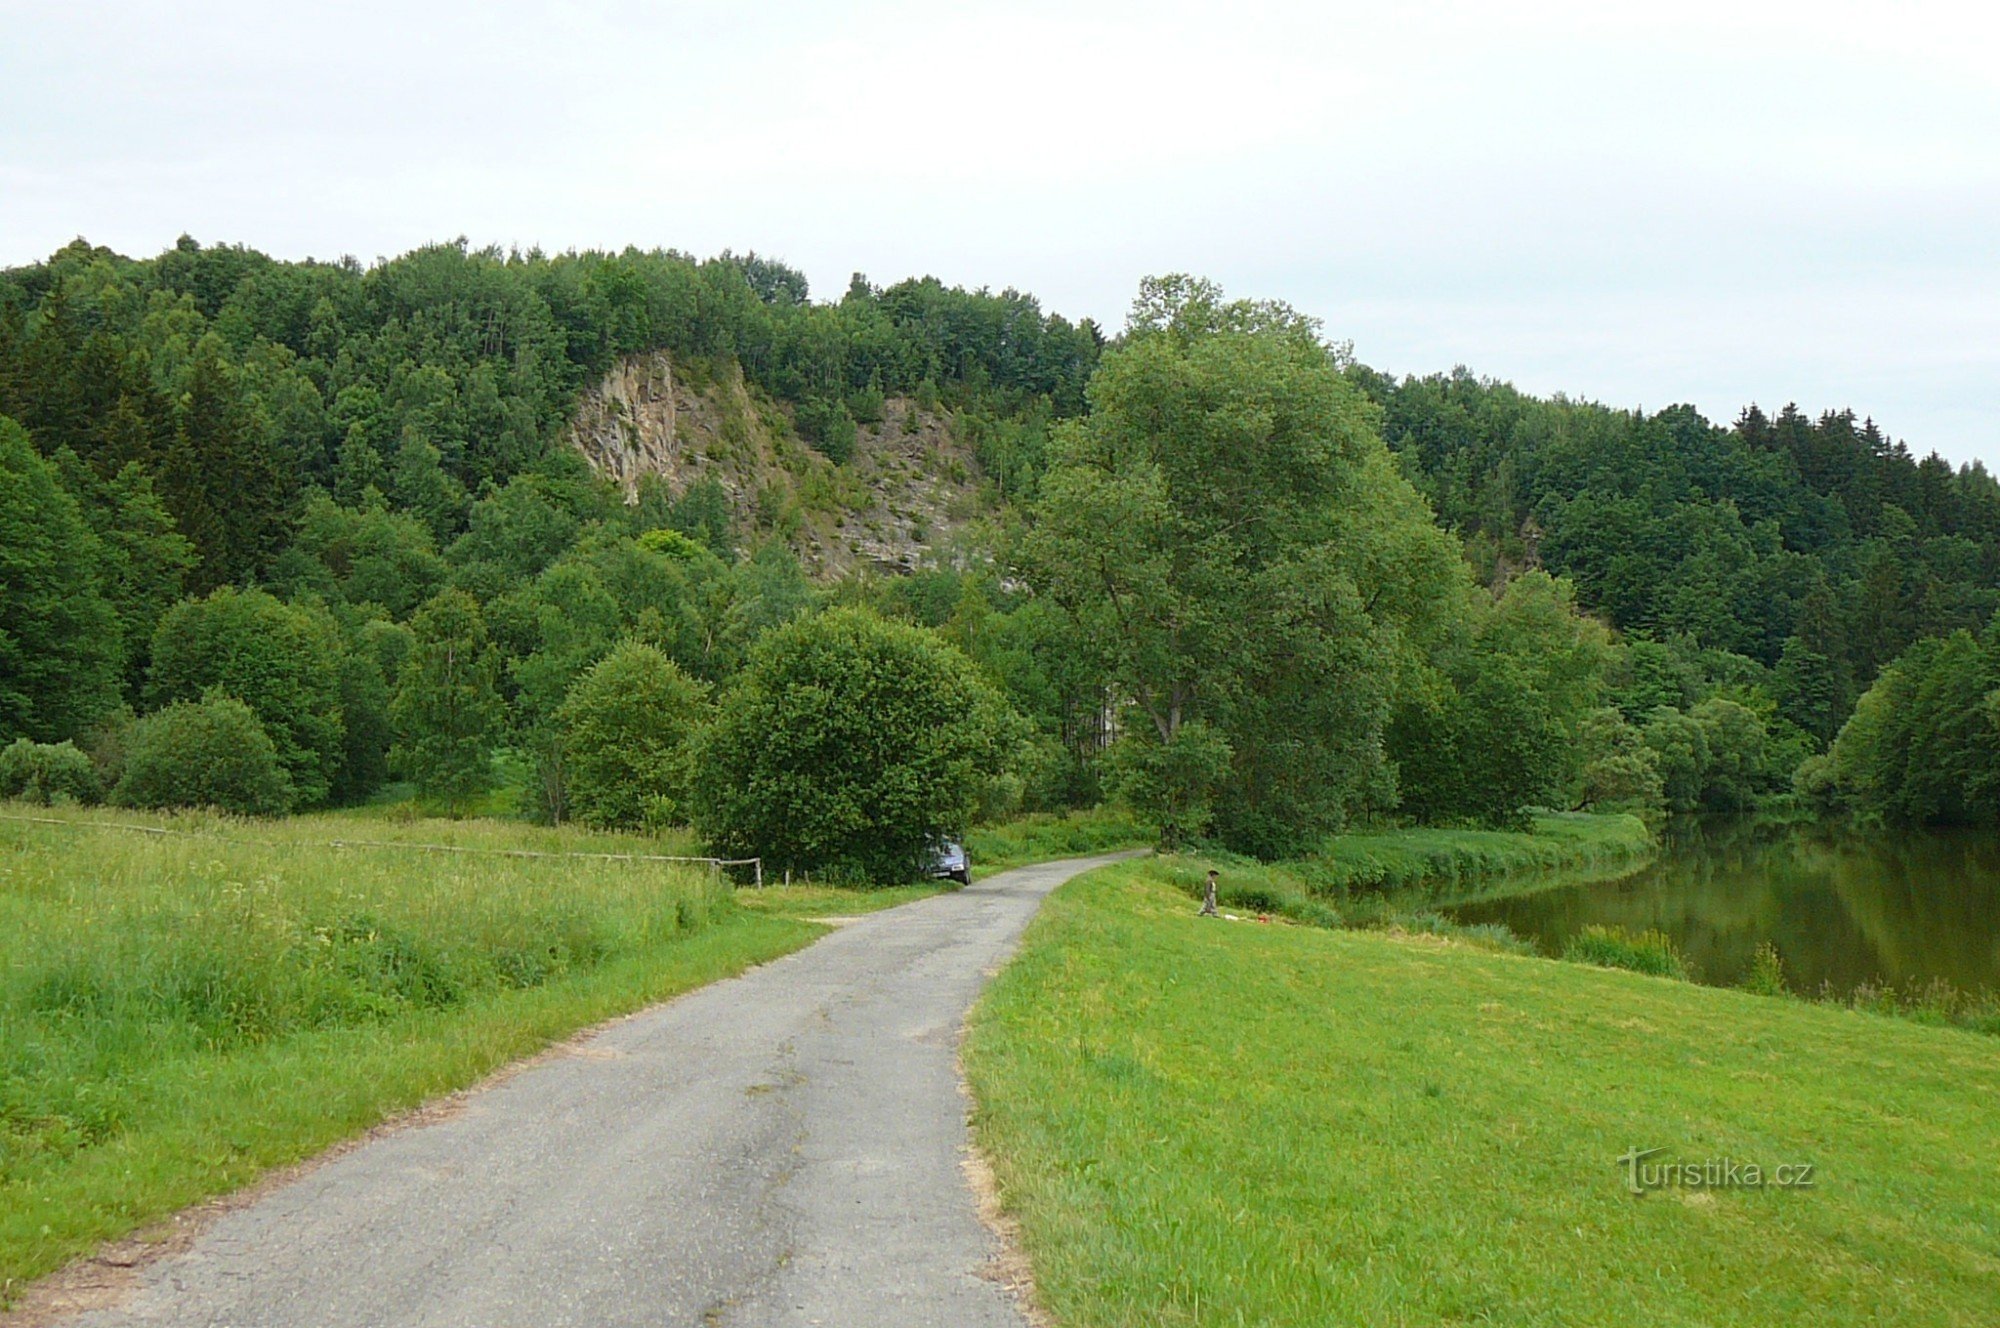 Giao lộ được đặt tên theo mỏ đá gần đó bên sông Sázava